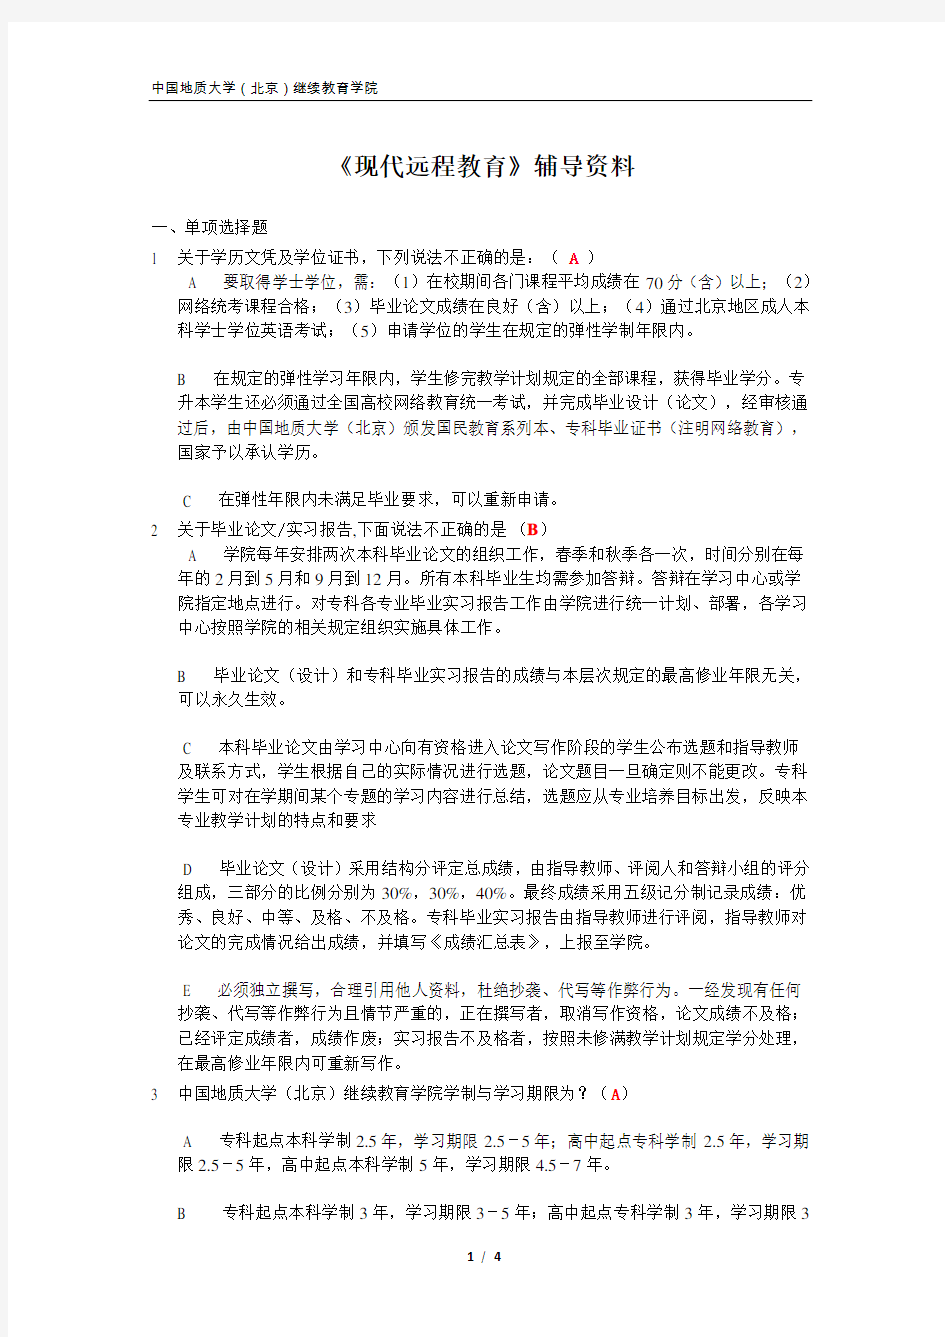 中国地质大学(北京)继续教育学院现代远程教育